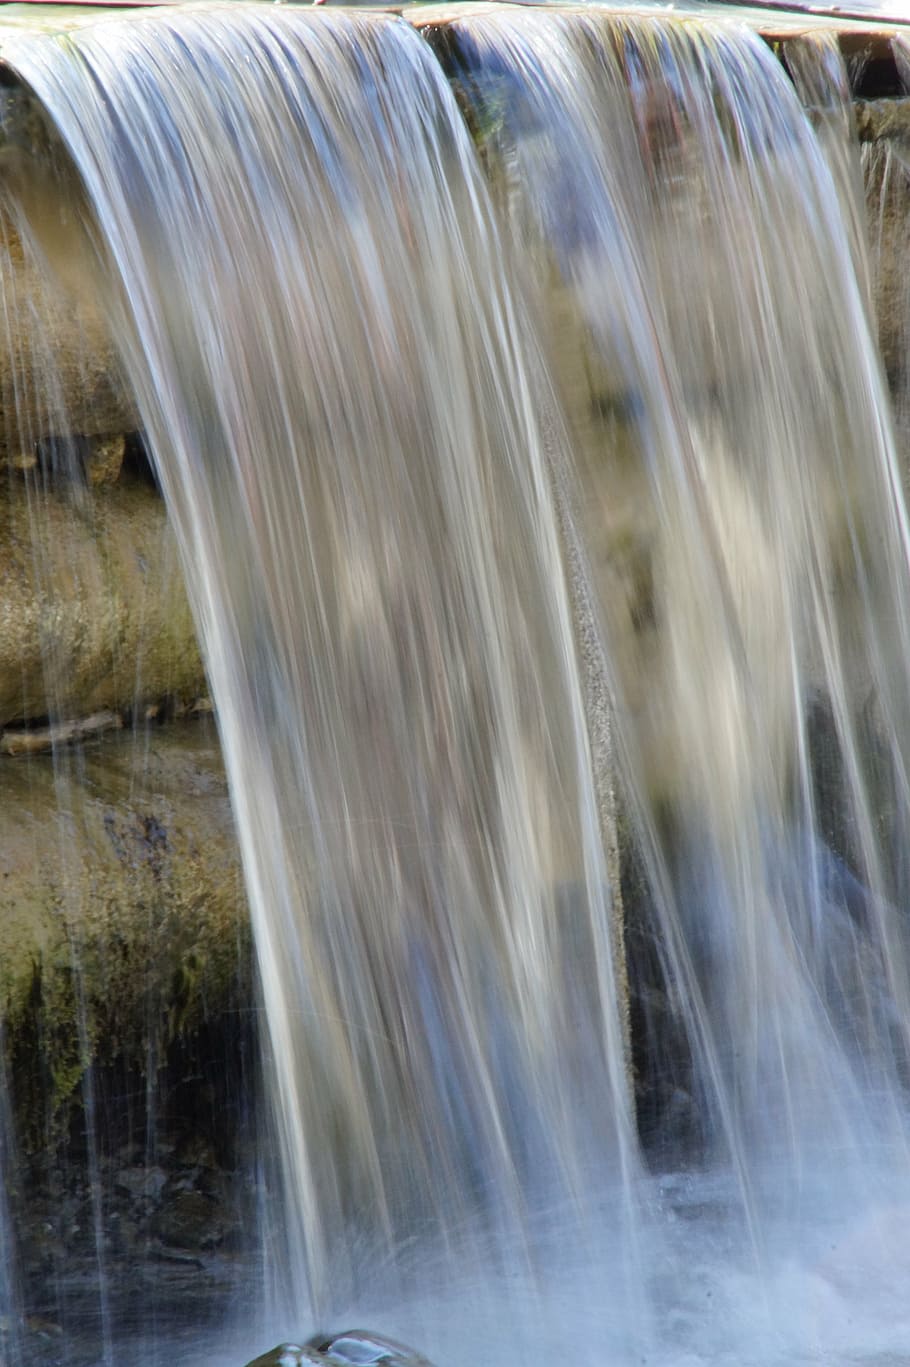 water, flow, fluent, waterfall, plunge, liquid, wet, dammed, stream, run over